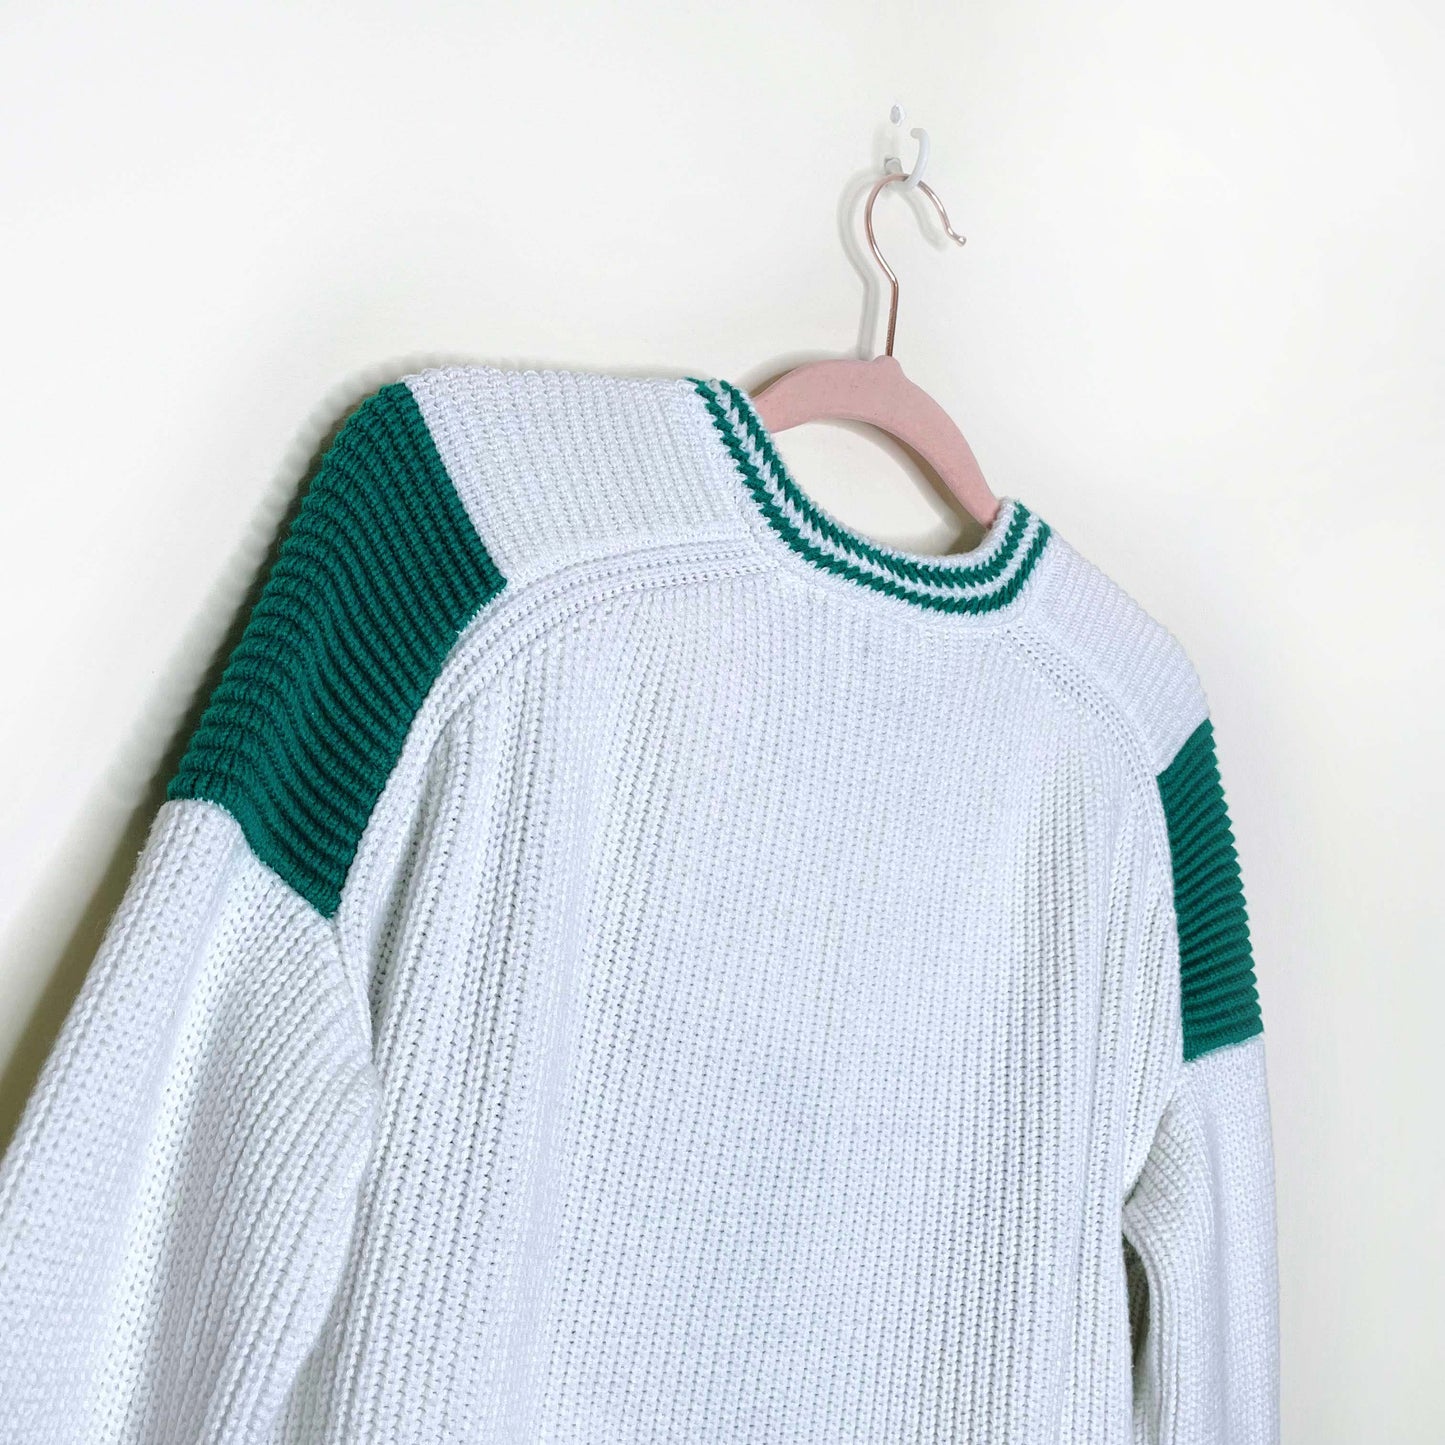 maje marina chevron cotton-wool knit sweater - size 2